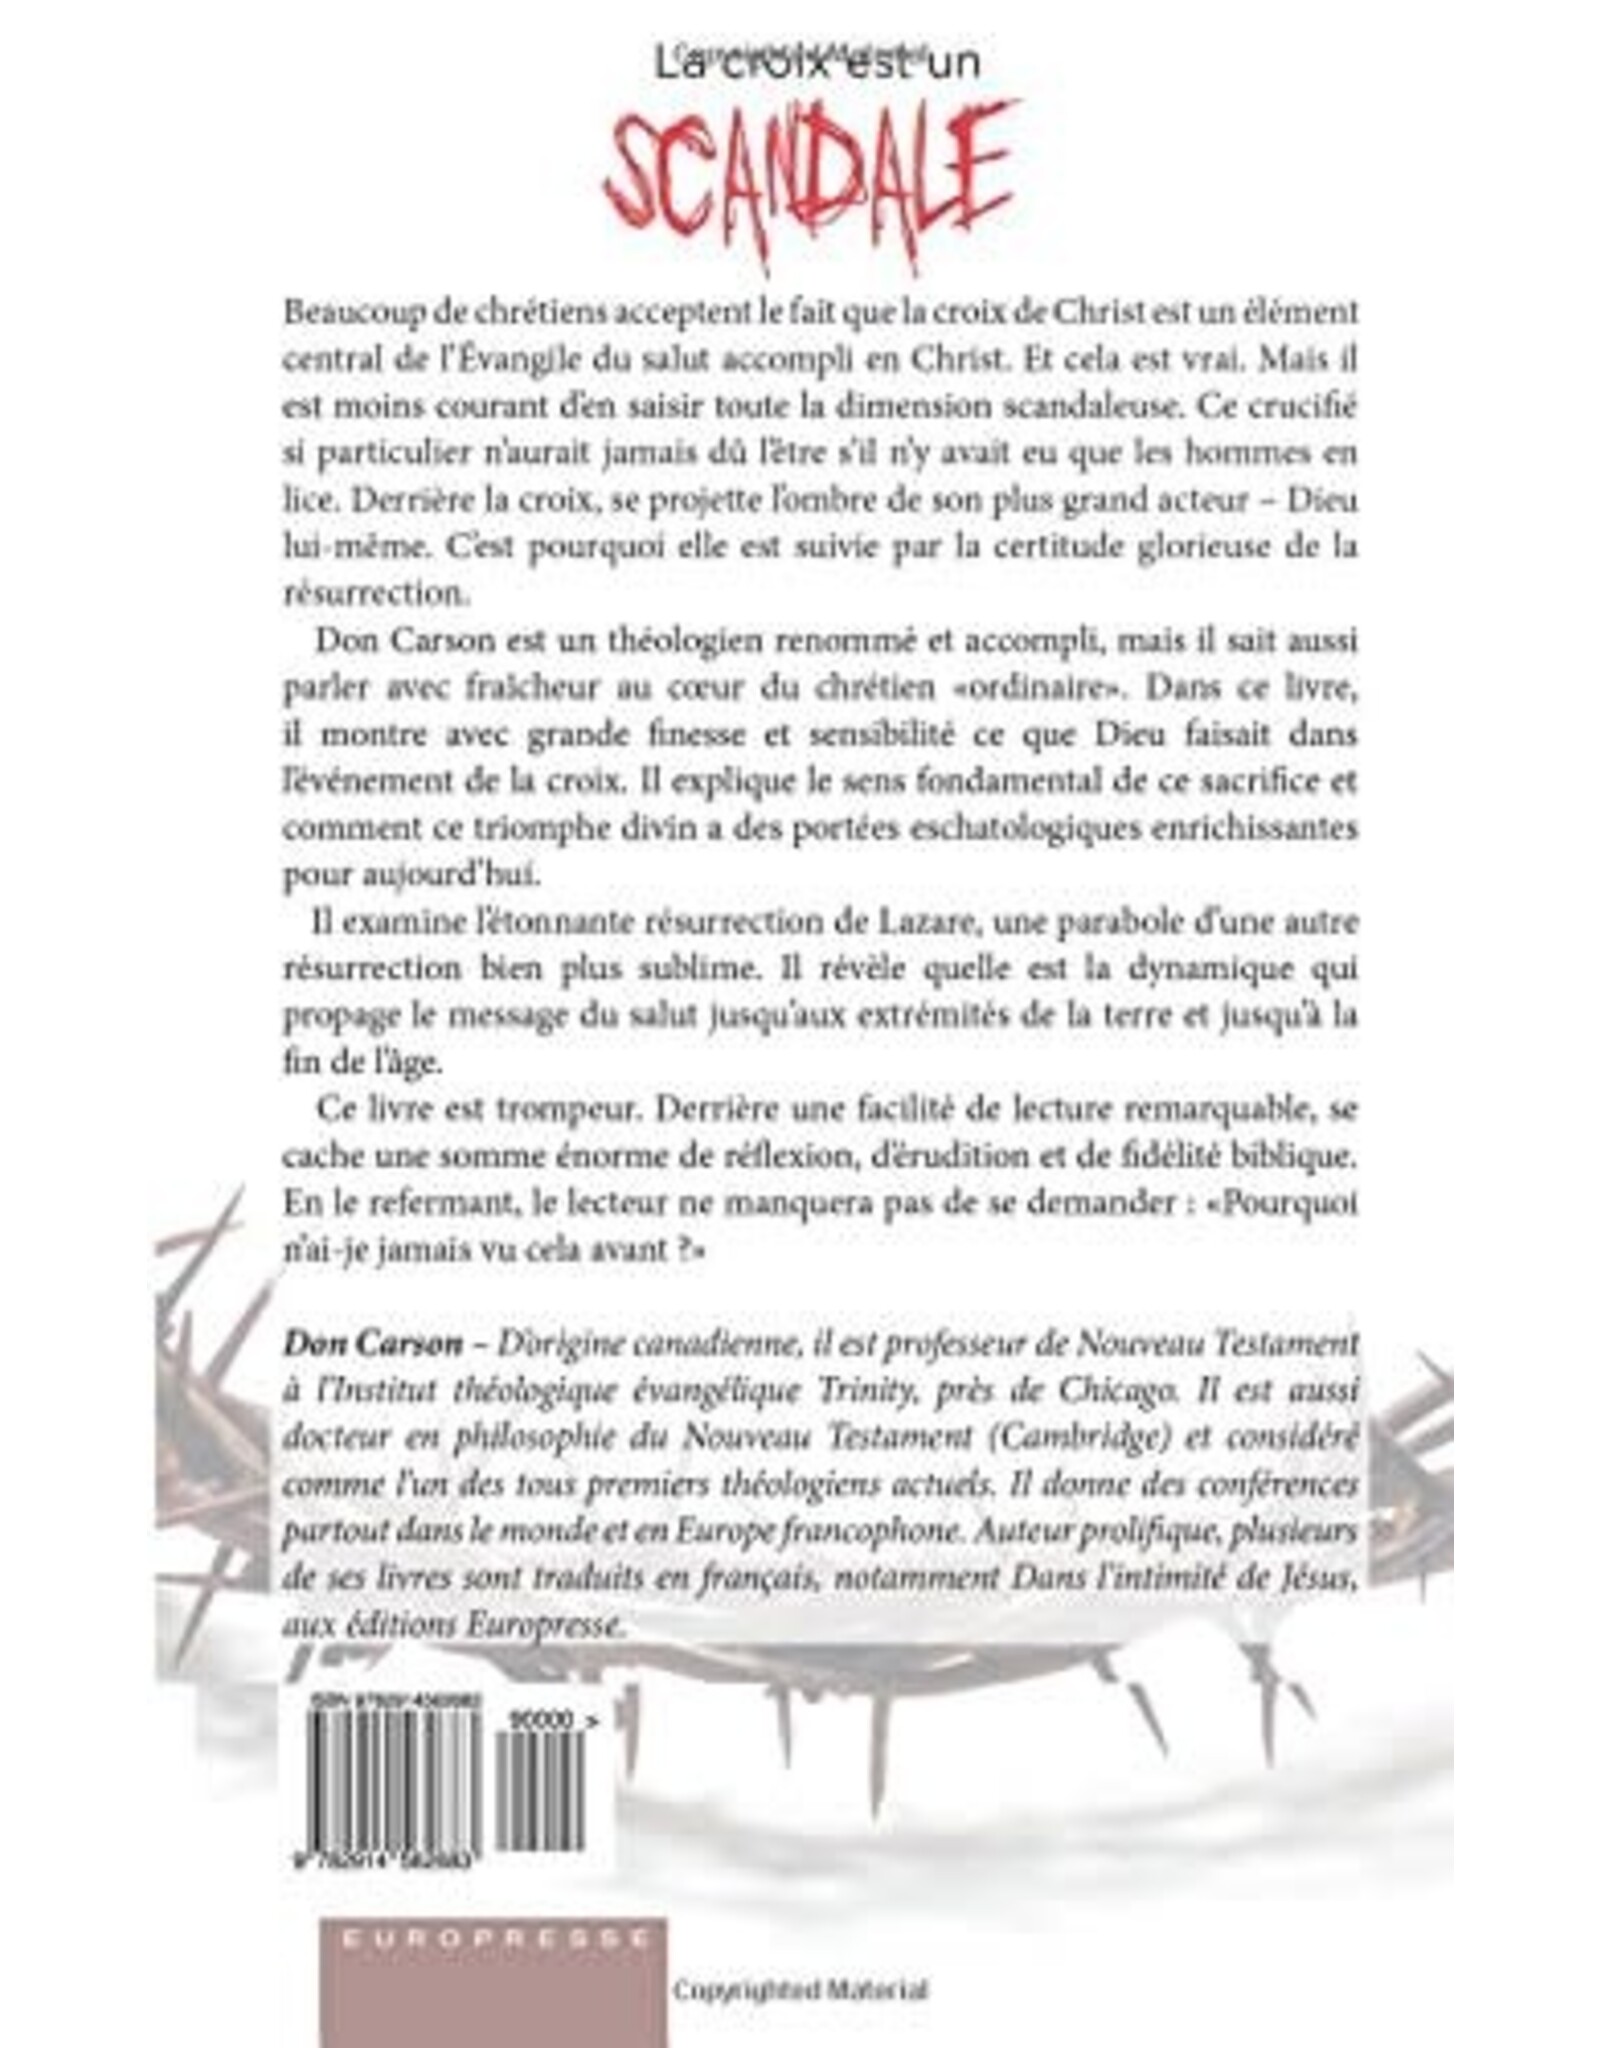 Publications Chretiennes La croix est un scandale (Scandalous: The Cross and Resurrection of Jesus [French])